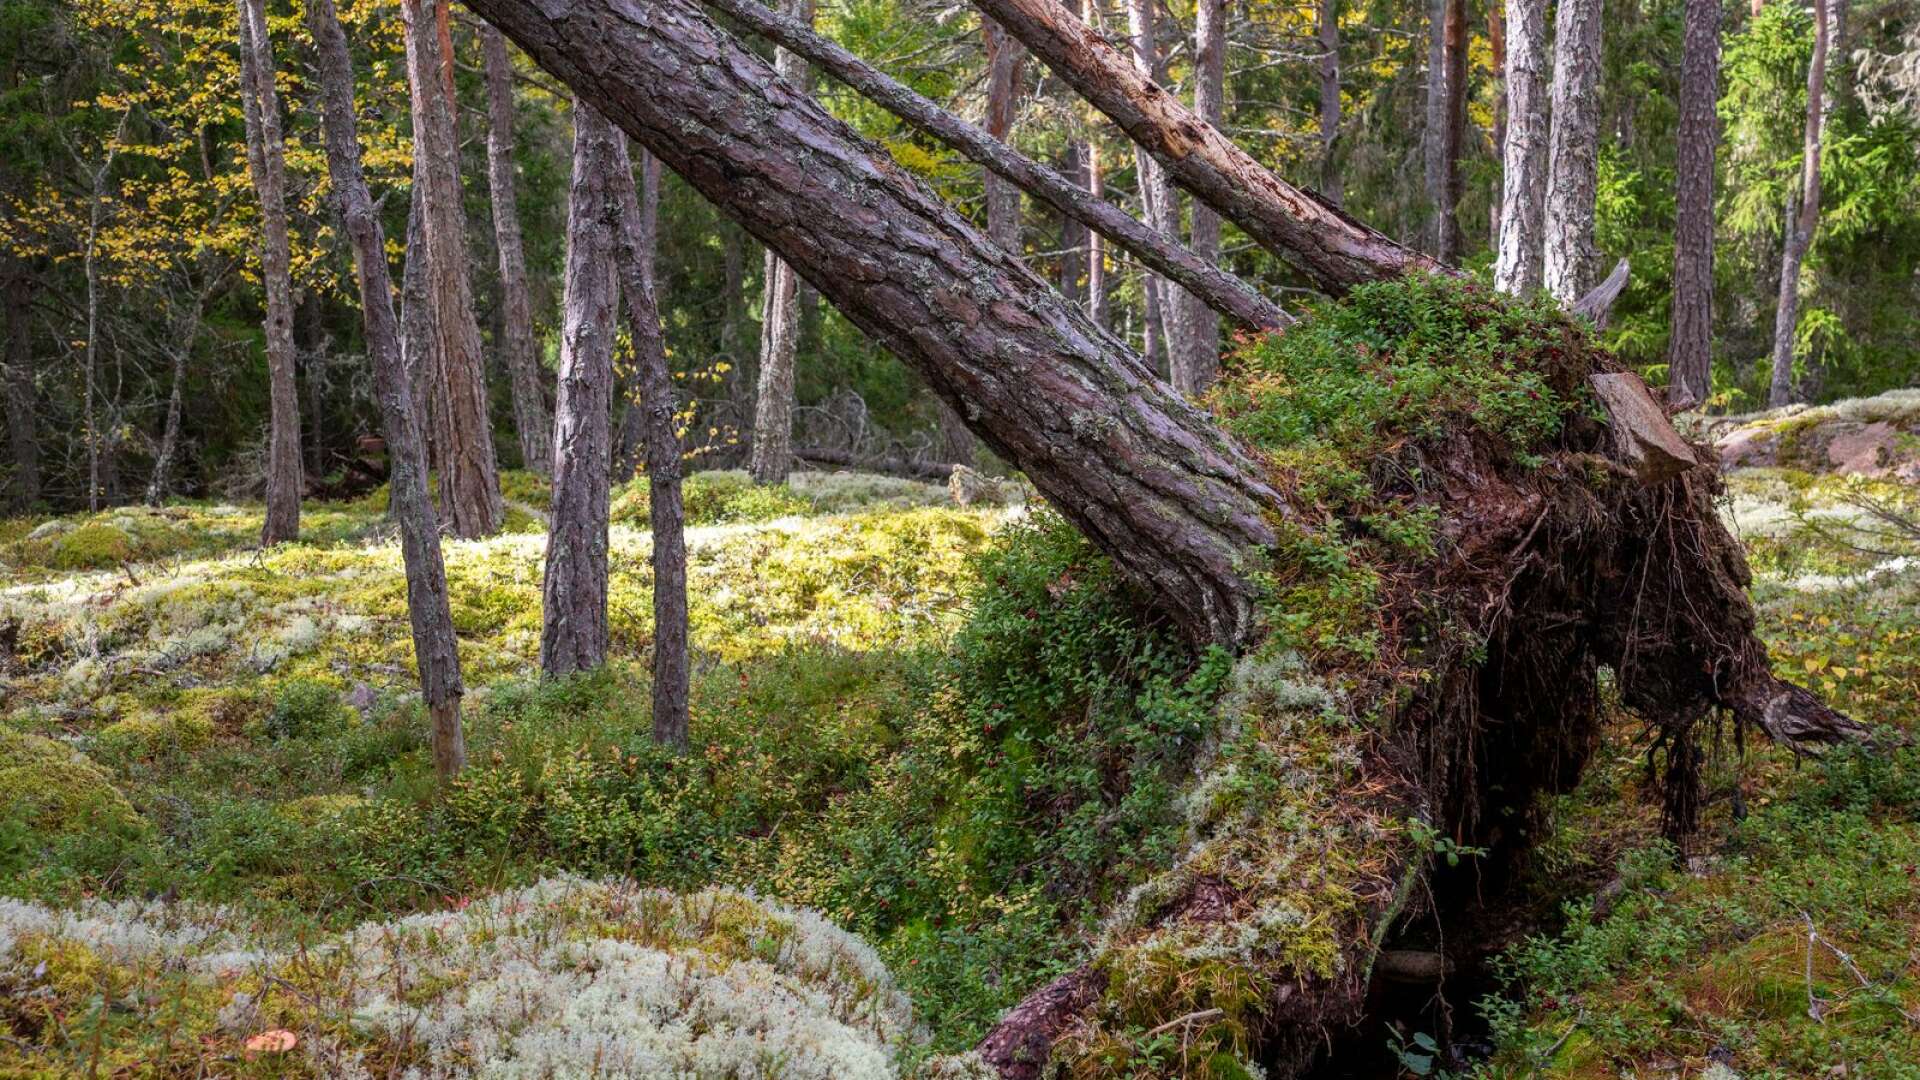 Skogsbruket orsakar brist på livsmiljöer för många arter som behöver gammal skog, gamla träd, grova träd eller död ved av olika slag, skriver Cecilia Boman Lindström och Jesper Johansson.